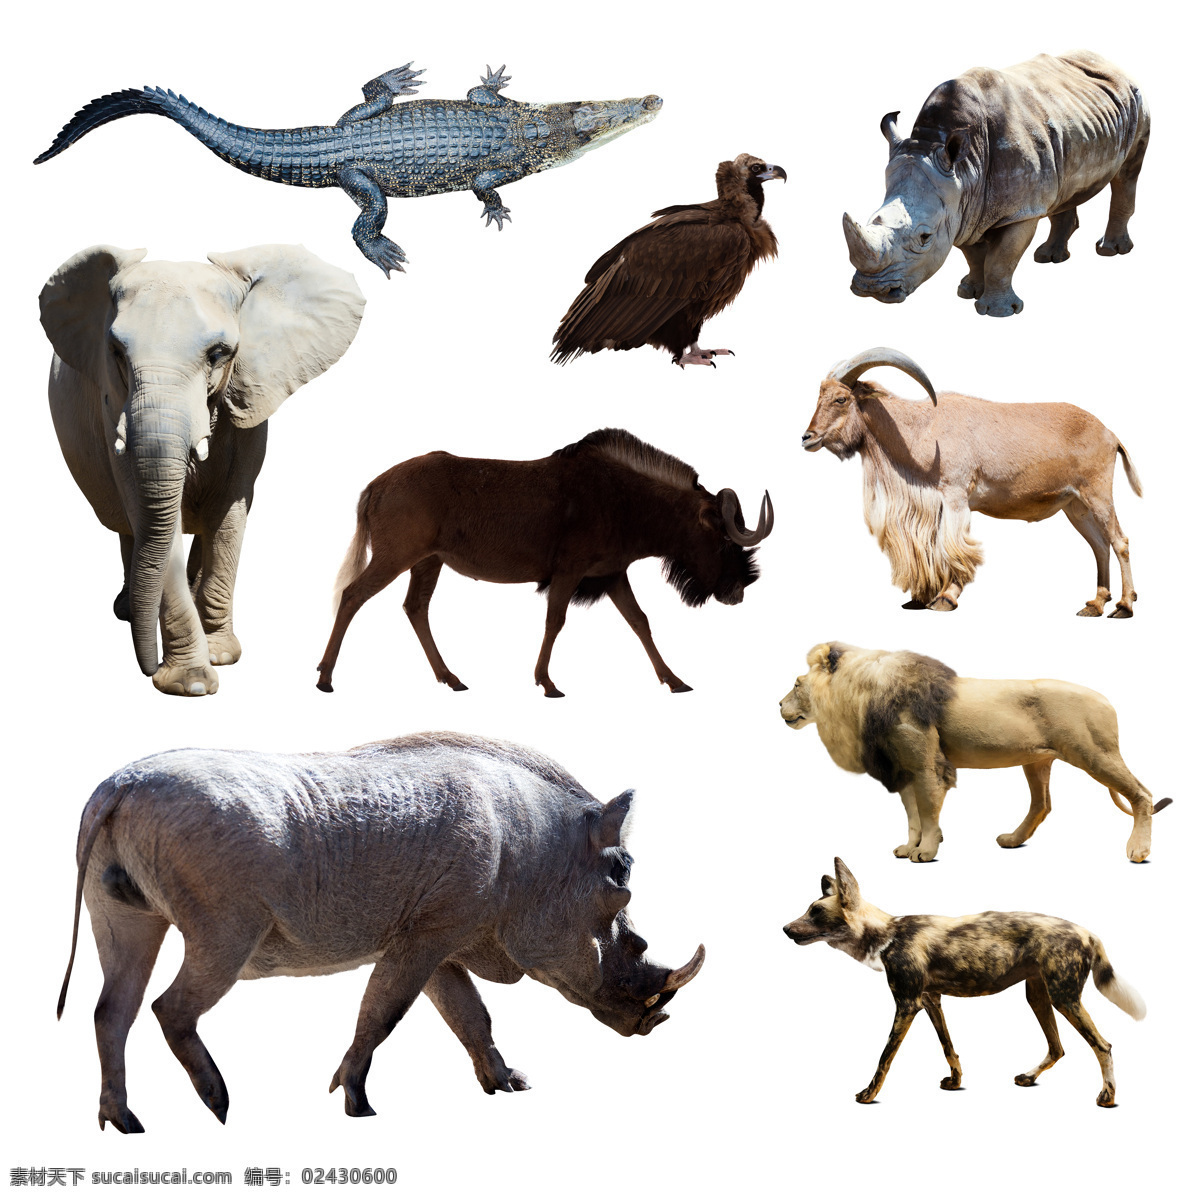 各种动物摄影 野生动物 动物世界 陆地动物 犀牛 狼 狮子 大象 鳄鱼 老鹰 生物世界 白色